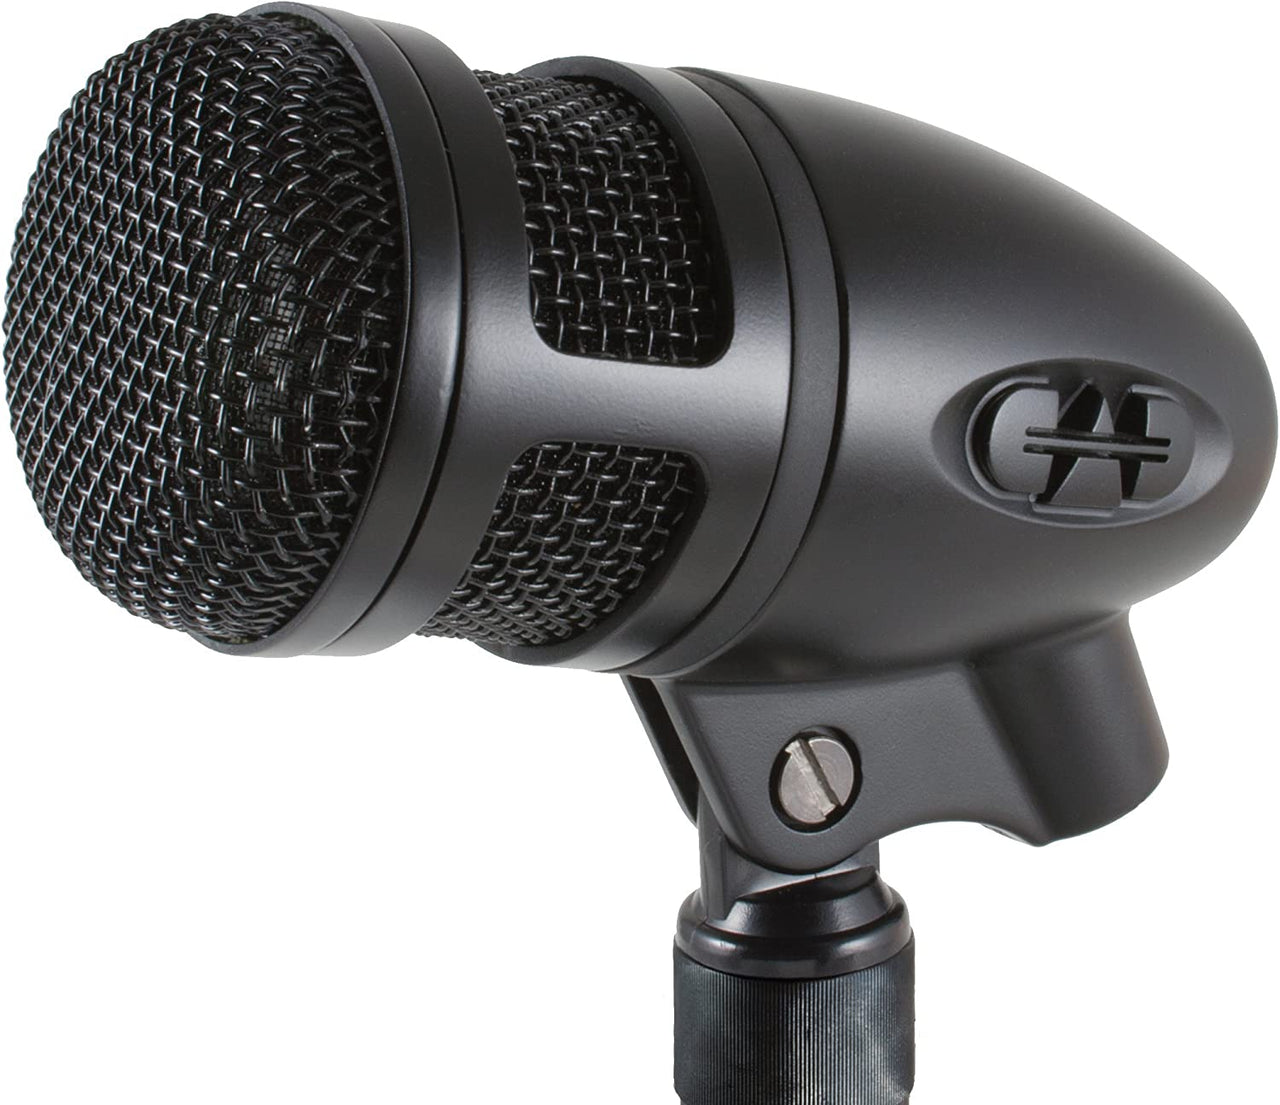 CAD Audio CADLive D88 Large Diaphragm Supercardioid Dynamic Kick Drum Microphone, Black